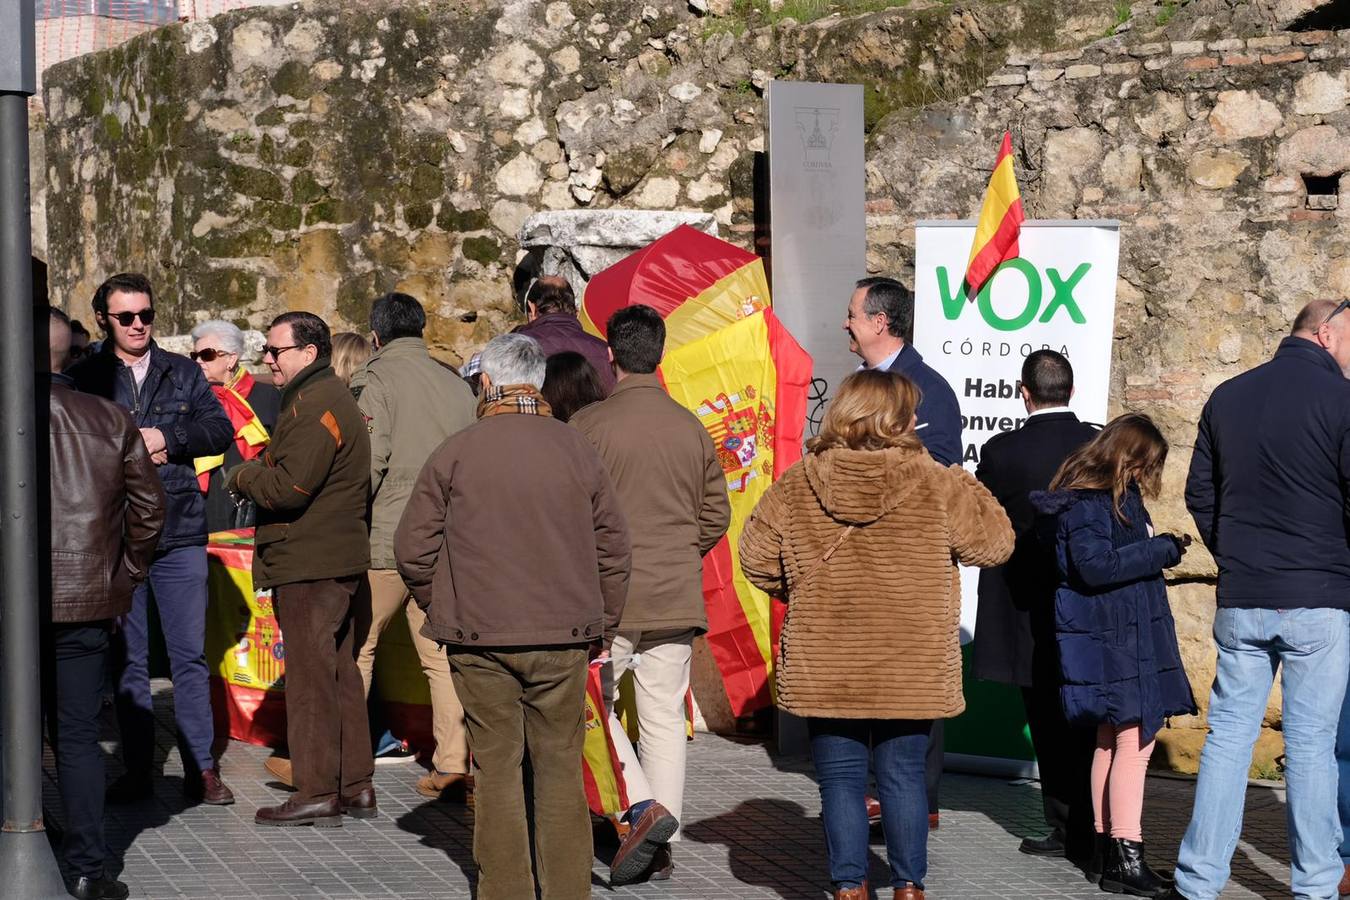 La concentración de VOX en Córdoba, en imágenes